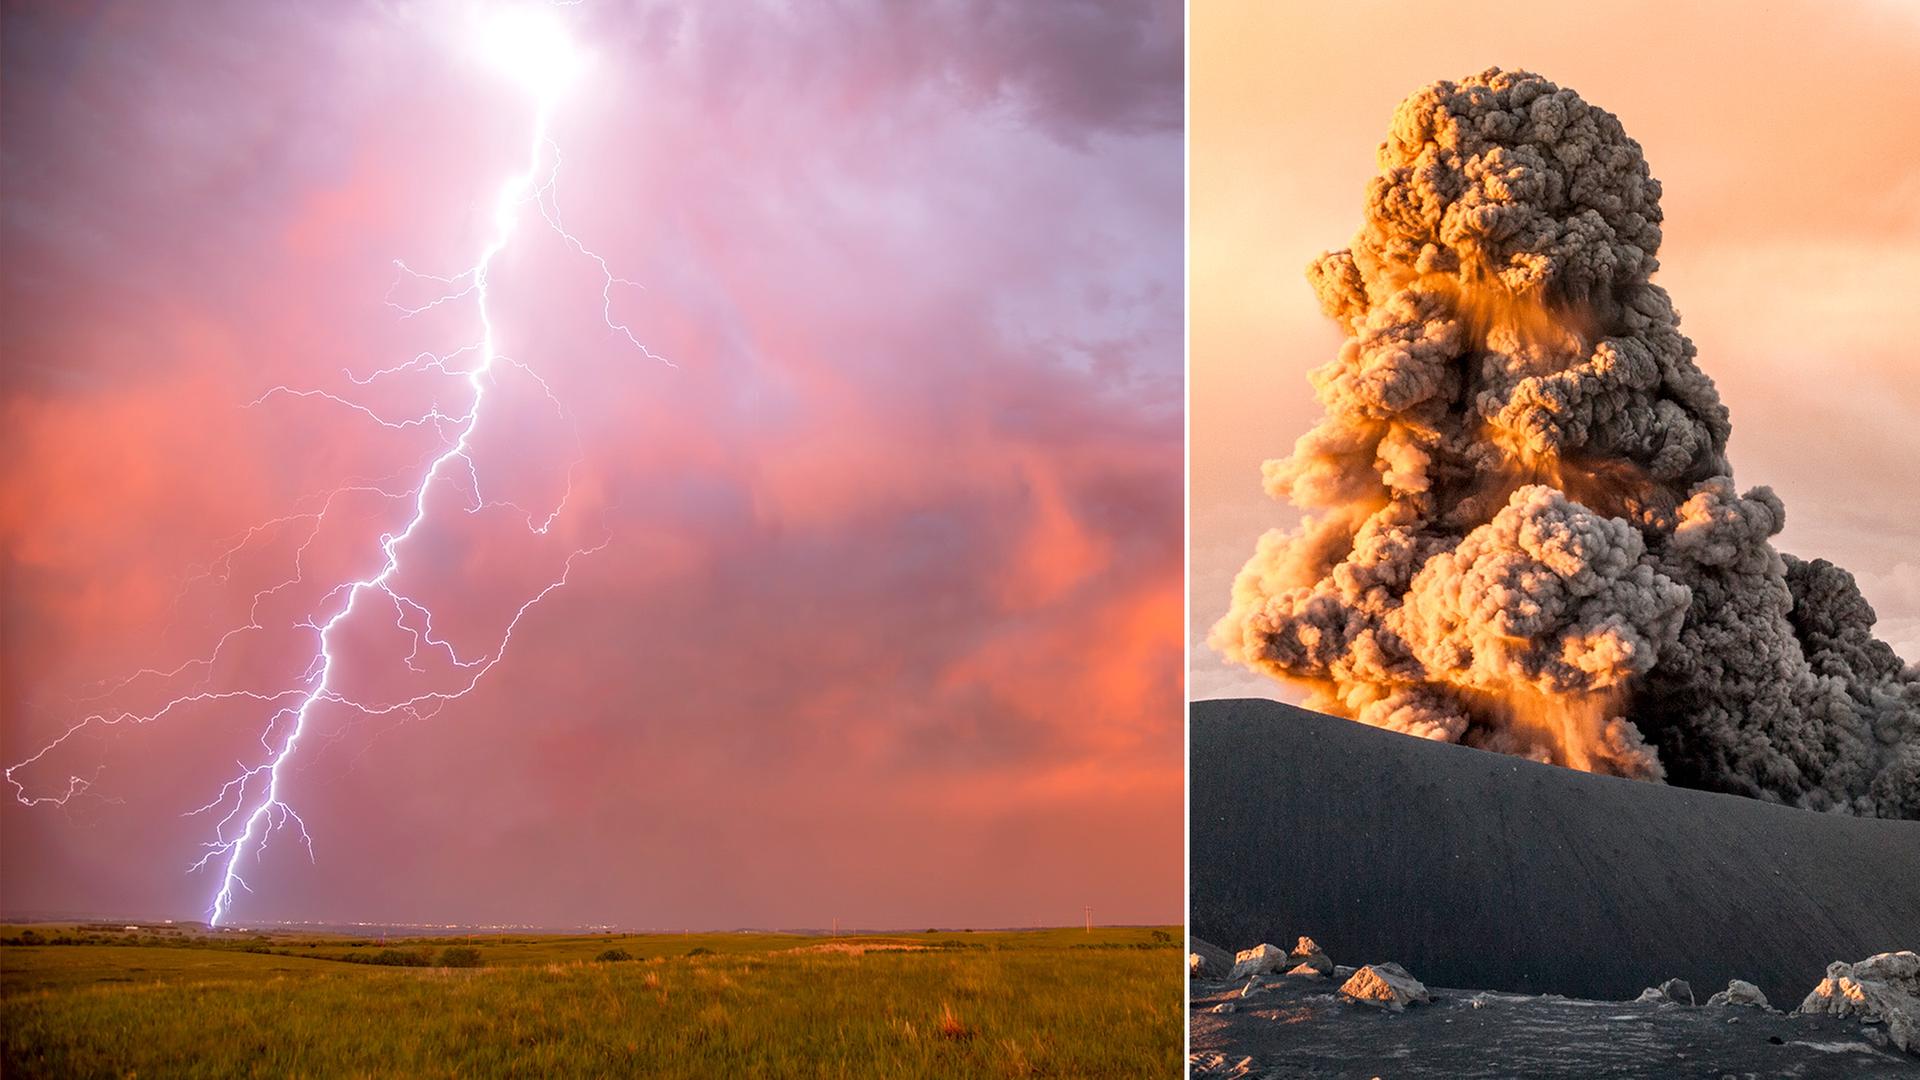 Bad Homburger Naturfotograf fängt die Tornados und Vulkane der Welt ein